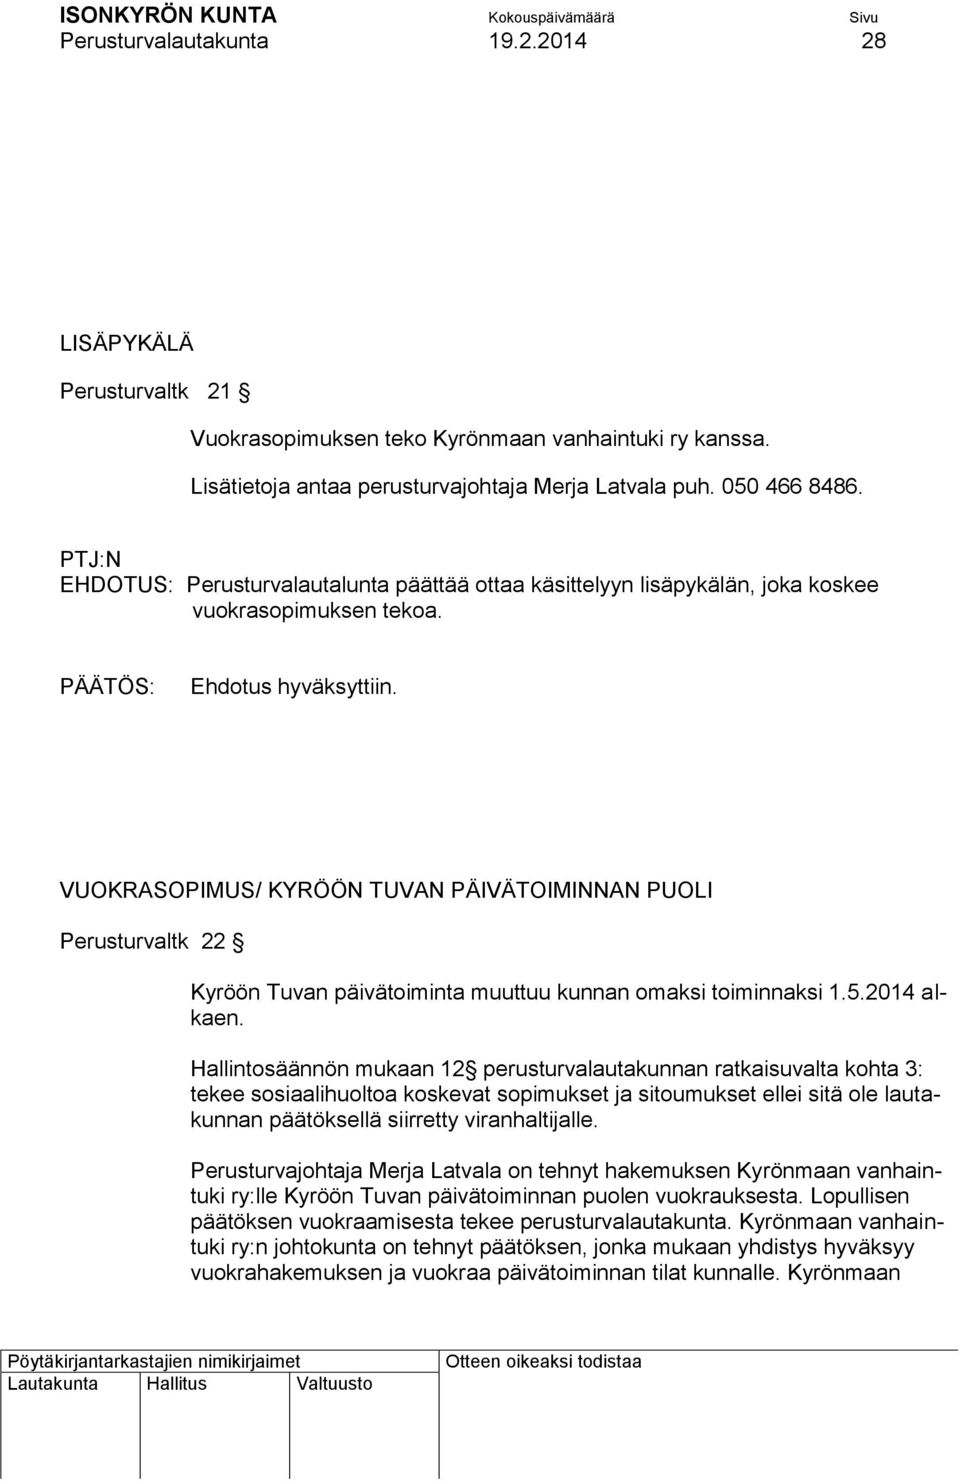 VUOKRASOPIMUS/ KYRÖÖN TUVAN PÄIVÄTOIMINNAN PUOLI Perusturvaltk 22 Kyröön Tuvan päivätoiminta muuttuu kunnan omaksi toiminnaksi 1.5.2014 alkaen.